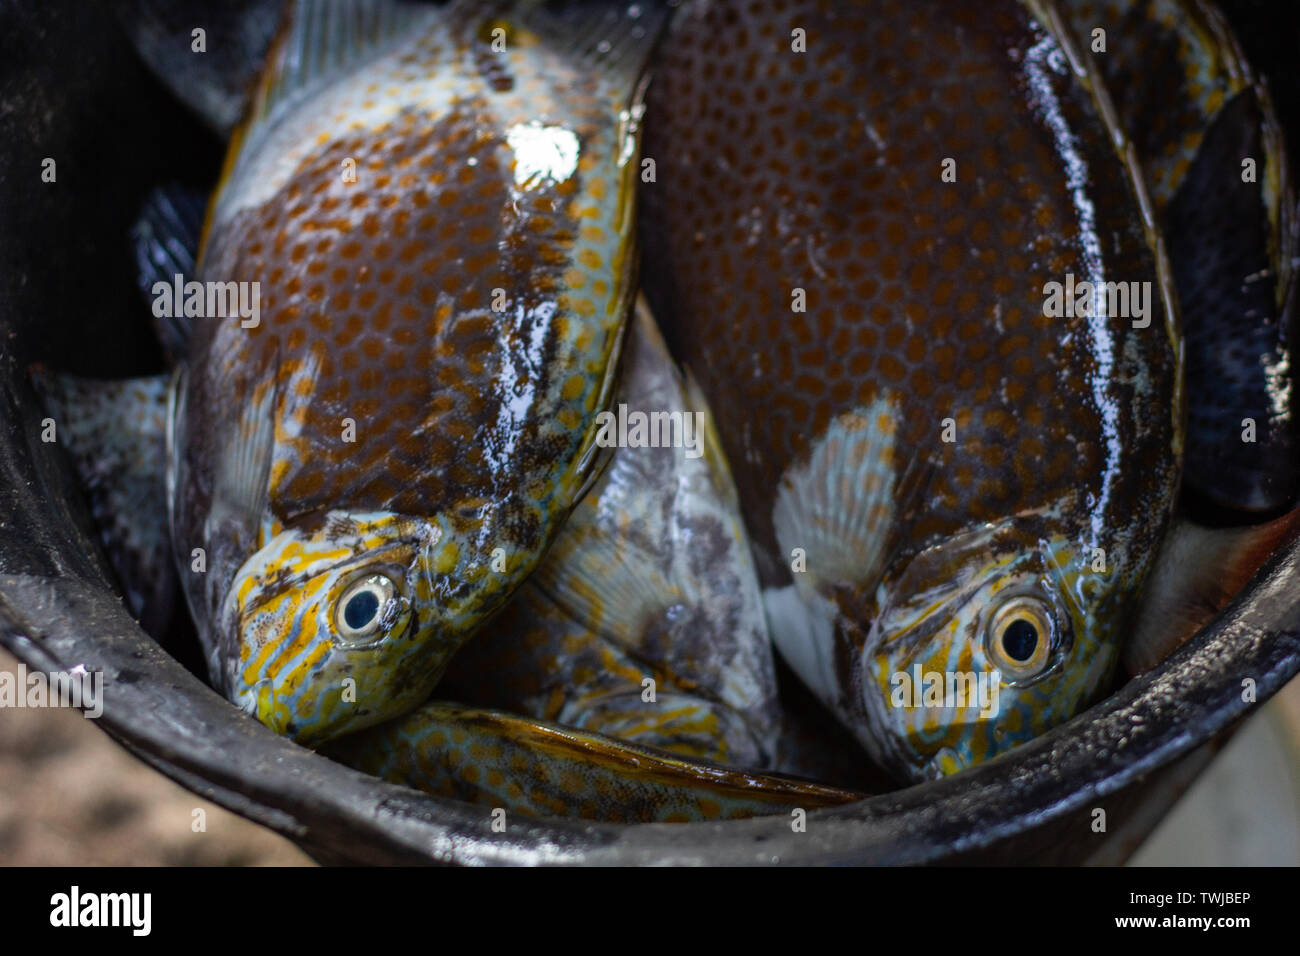 Certaines matières premières fraîches et poissons perroquets capturés par les pêcheurs sont placés dans un seau en plastique Banque D'Images